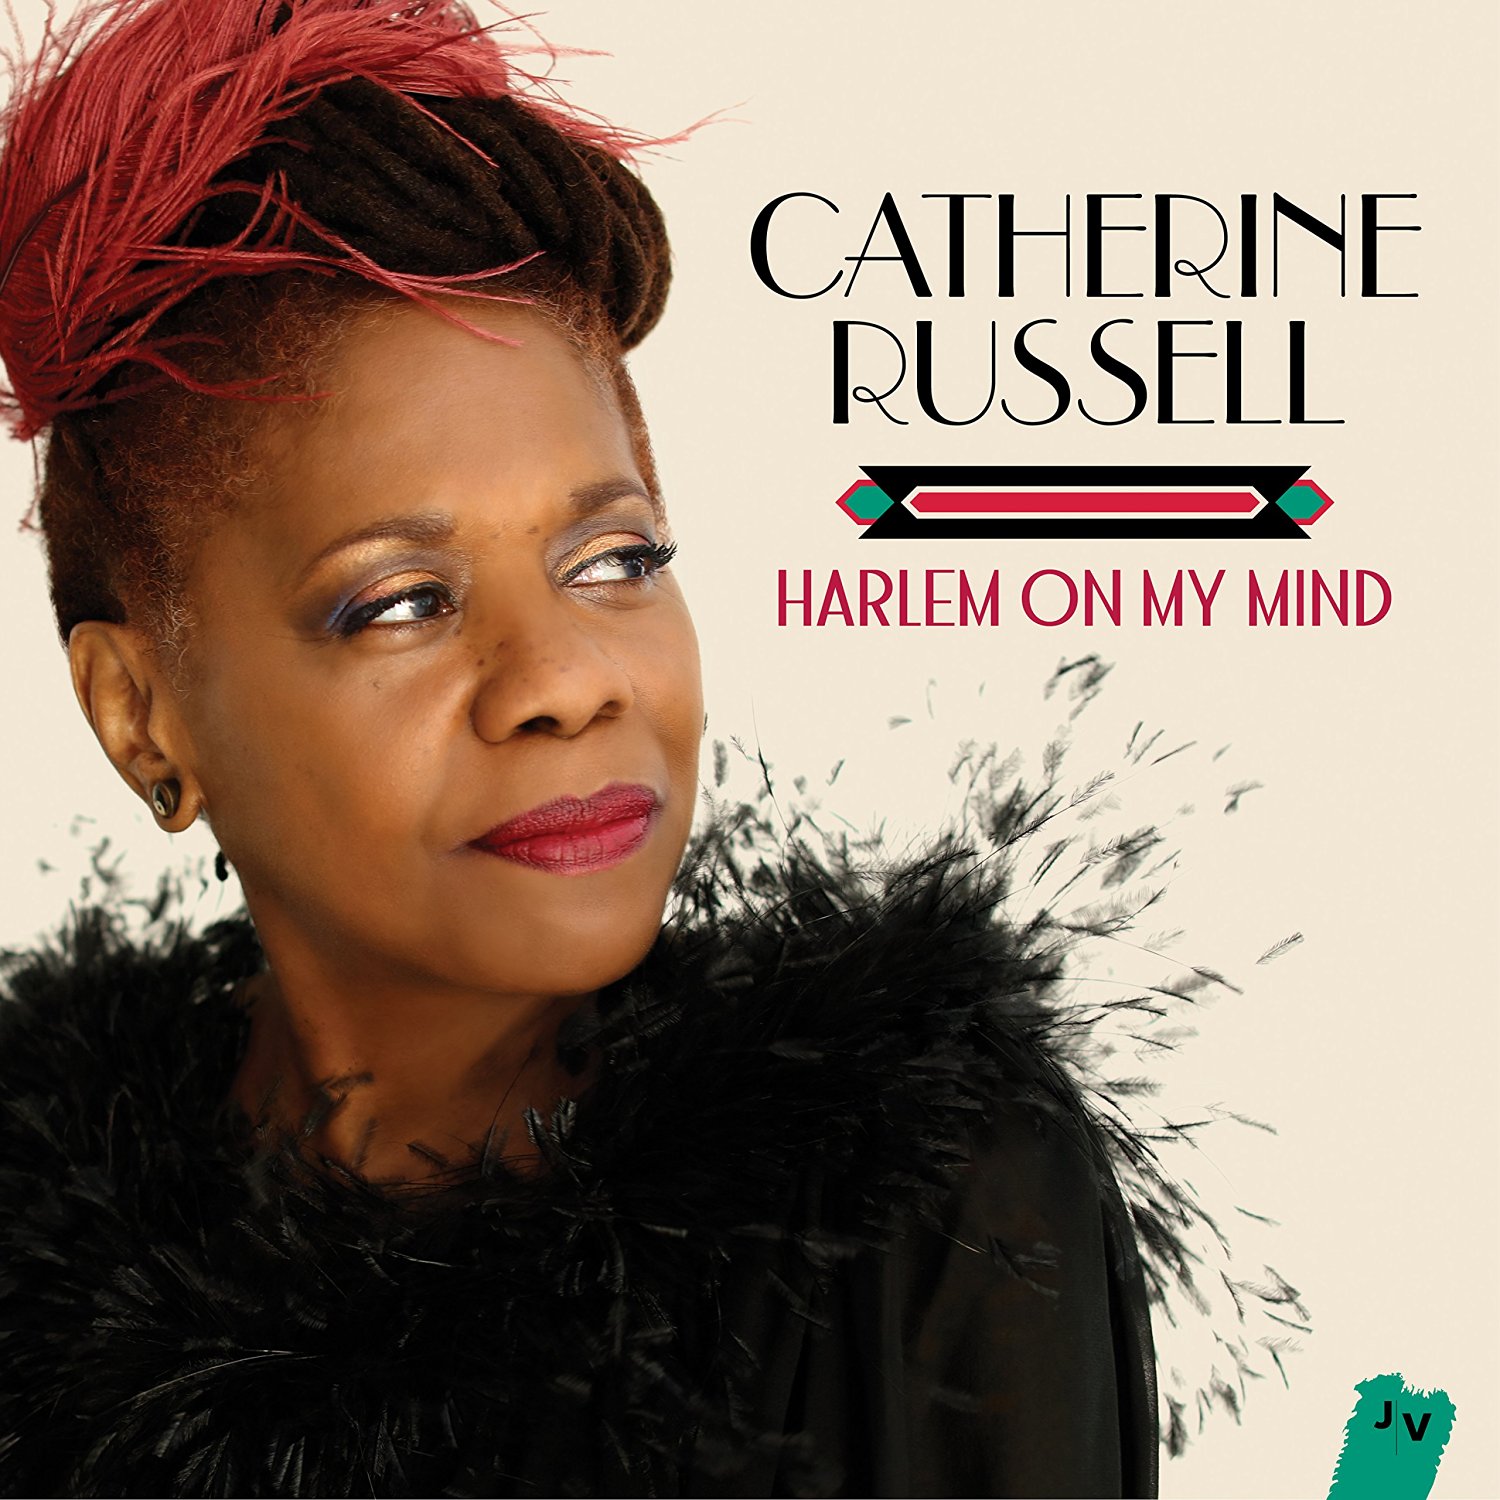 Catherine Russell (Yeni albümü "Harlem on my Mind" ile)